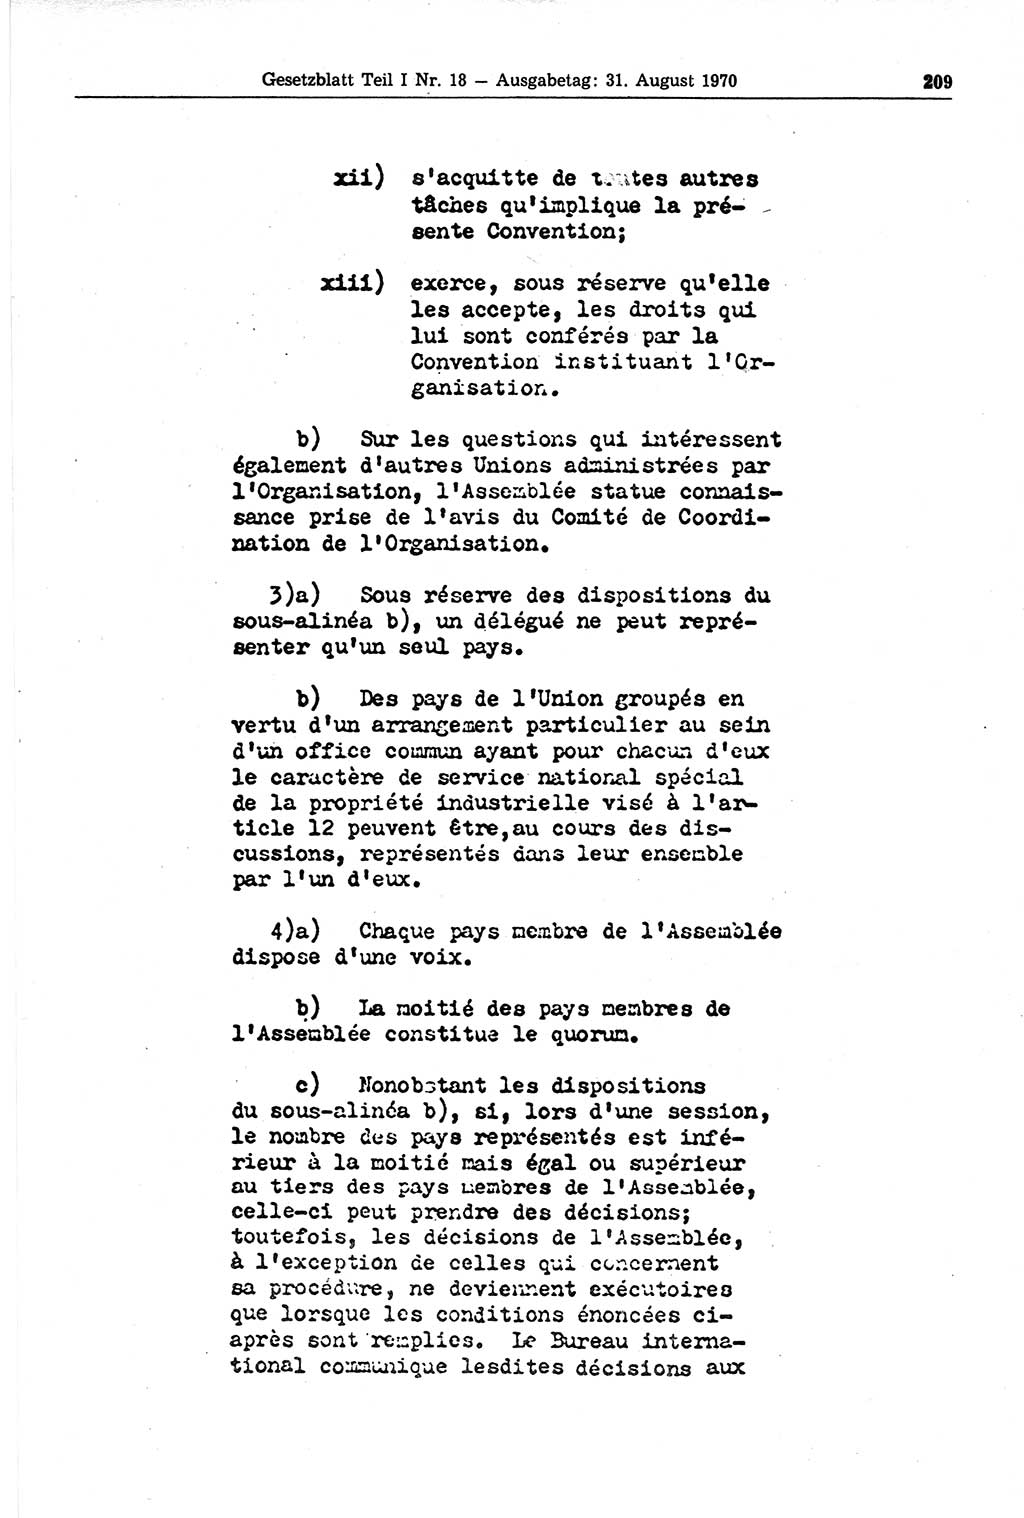 Gesetzblatt (GBl.) der Deutschen Demokratischen Republik (DDR) Teil Ⅰ 1970, Seite 209 (GBl. DDR Ⅰ 1970, S. 209)